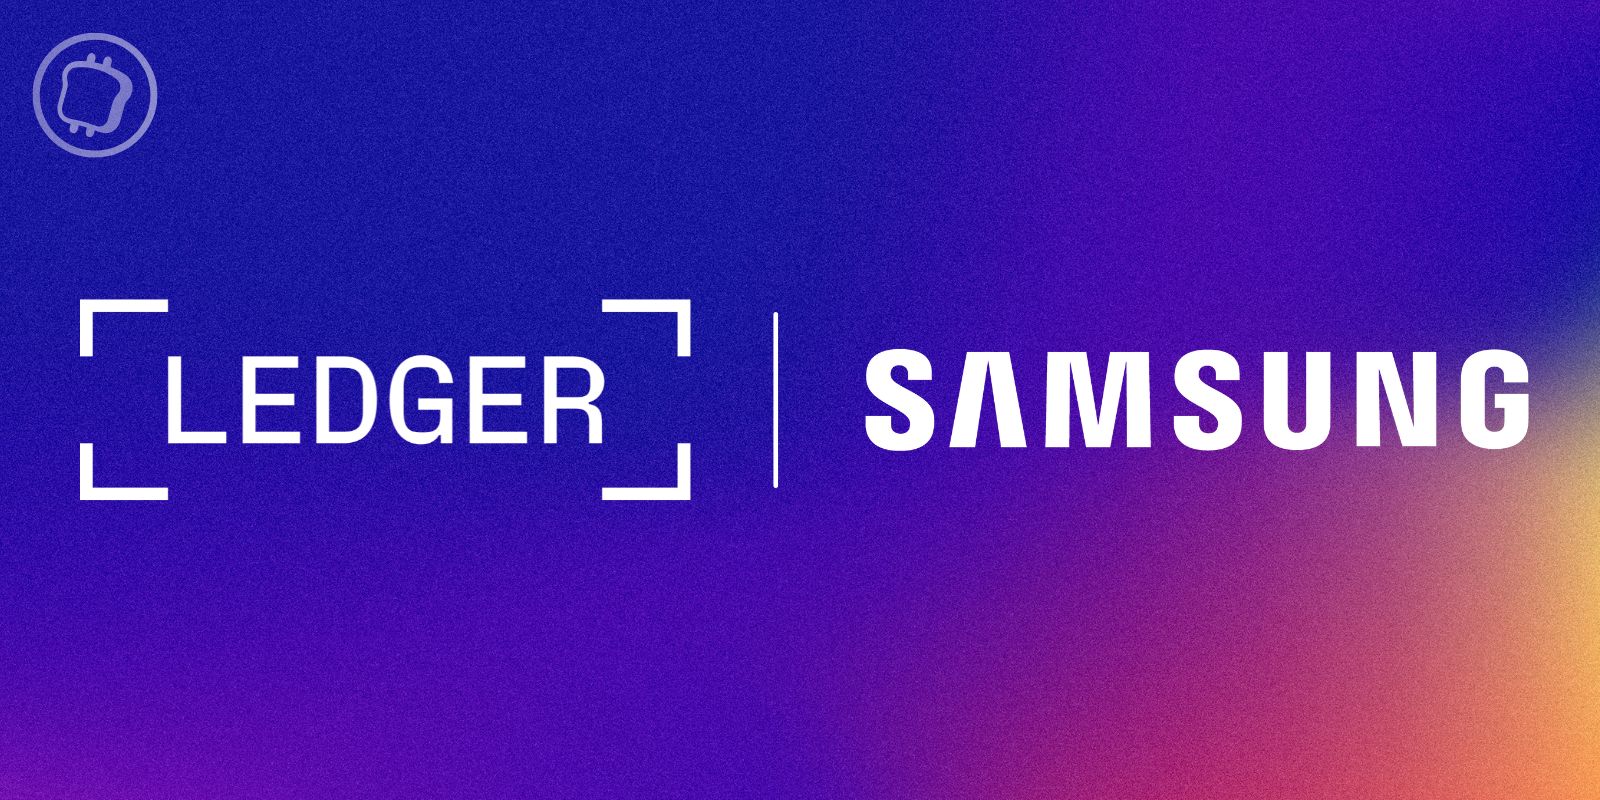 Ledger et Samsung présentent un partenariat — En quoi consiste-t-il ?